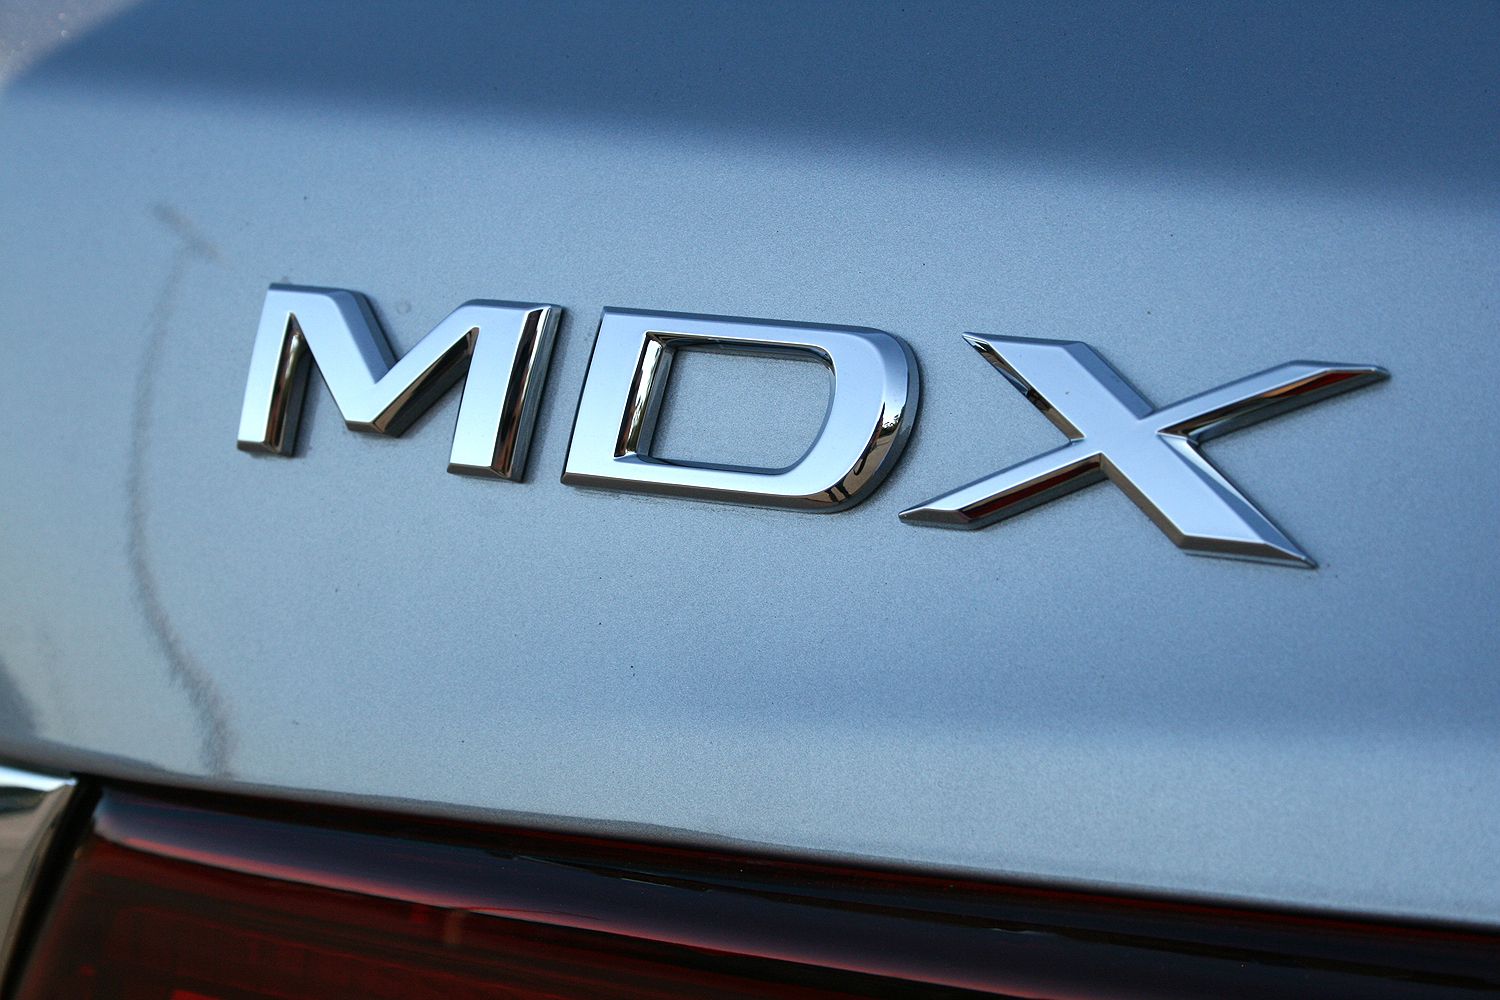 2017 Acura MDX – Driven